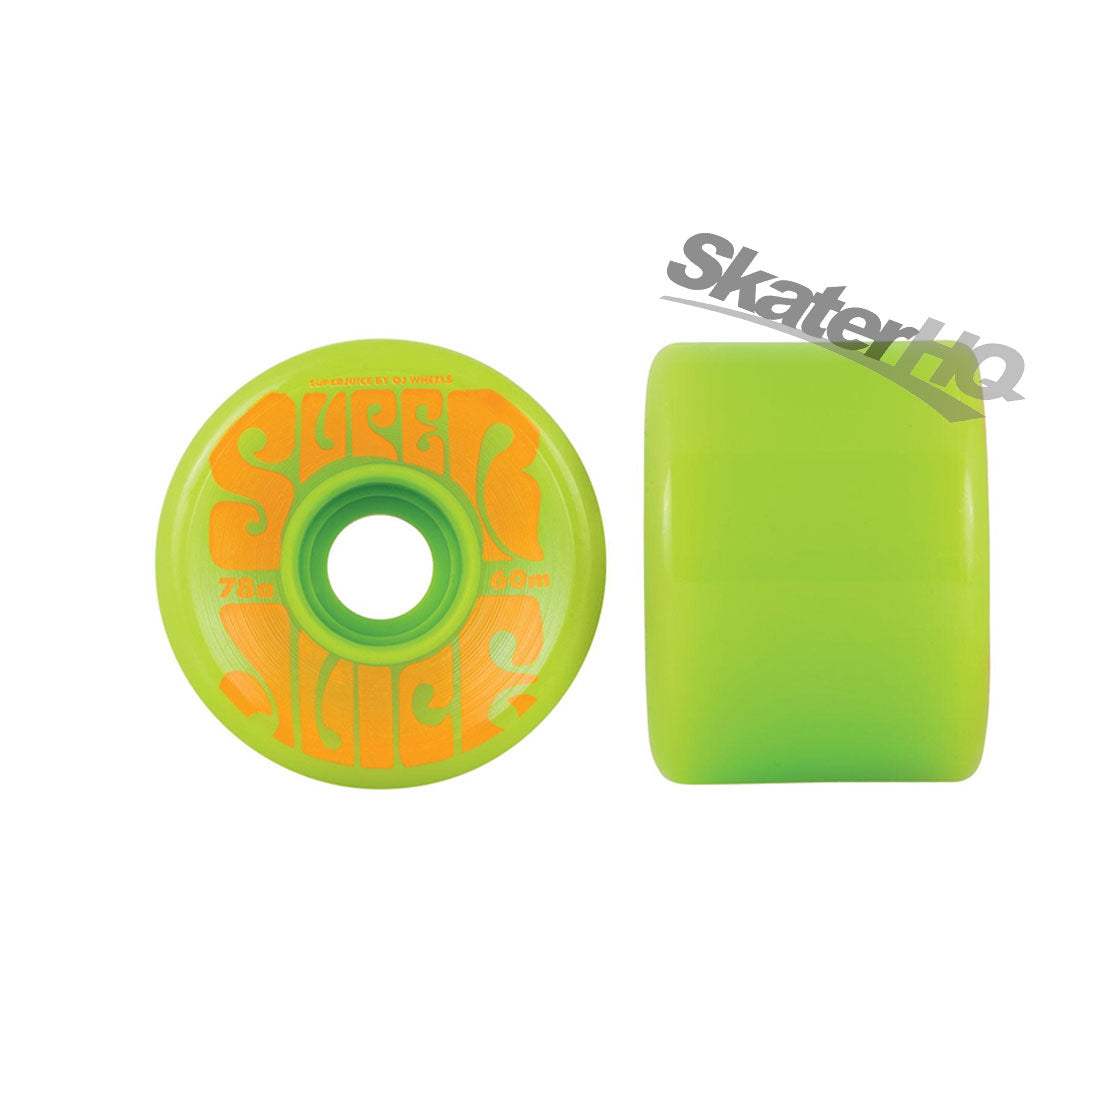 OJs Super Juice 60mm 78a 4pk - Lime Green Skateboard Wheels